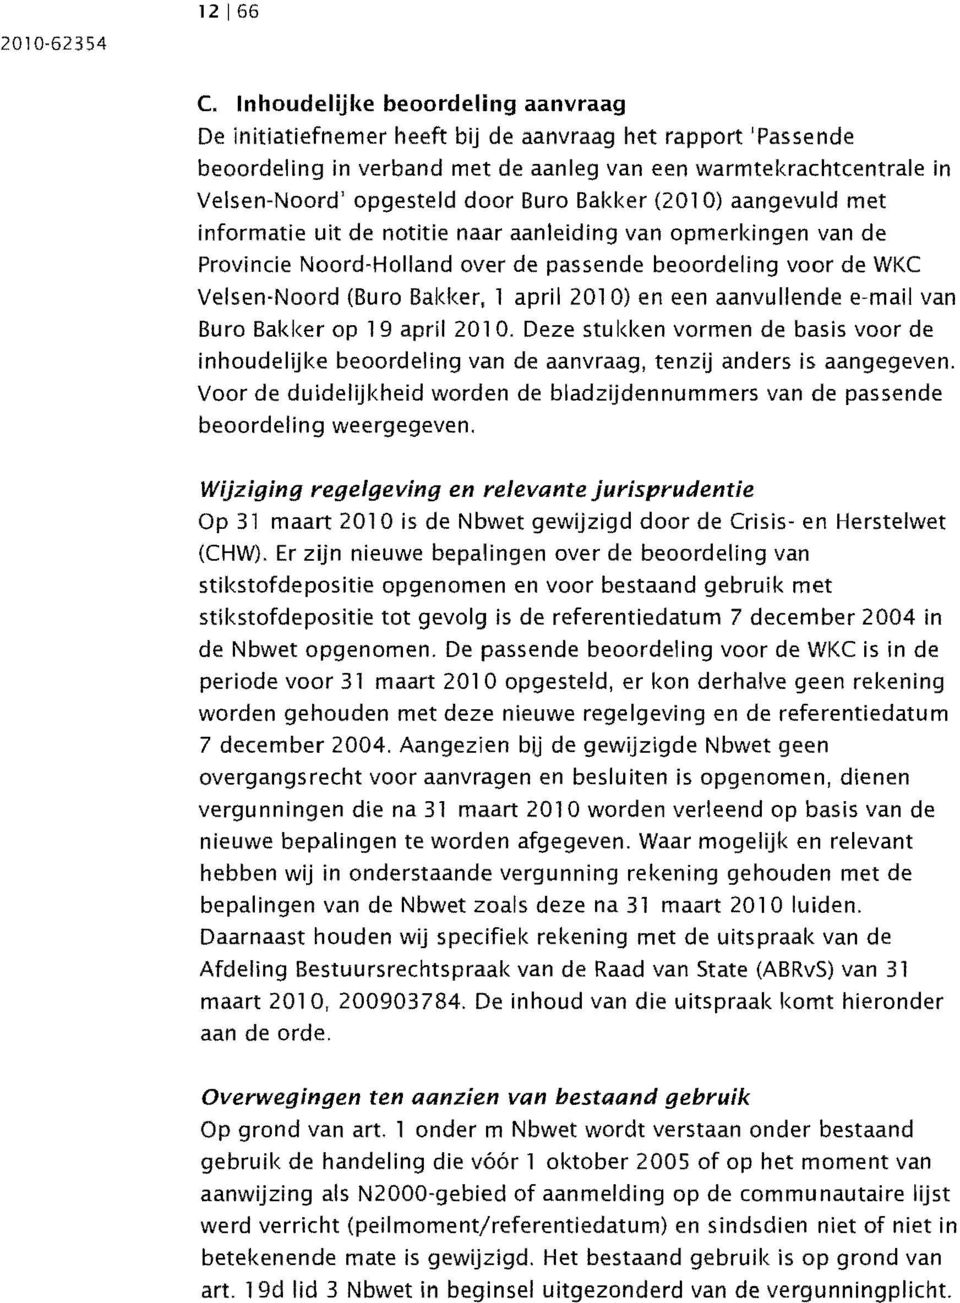 Buro Bakker (2010) aangevuld met informatie uit de notitie naar aanleiding van opmerkingen van de Provincie Noord-Holland over de passende beoordeling voor de WKC Velsen-Noord (Bu ro Bakker, 1 april